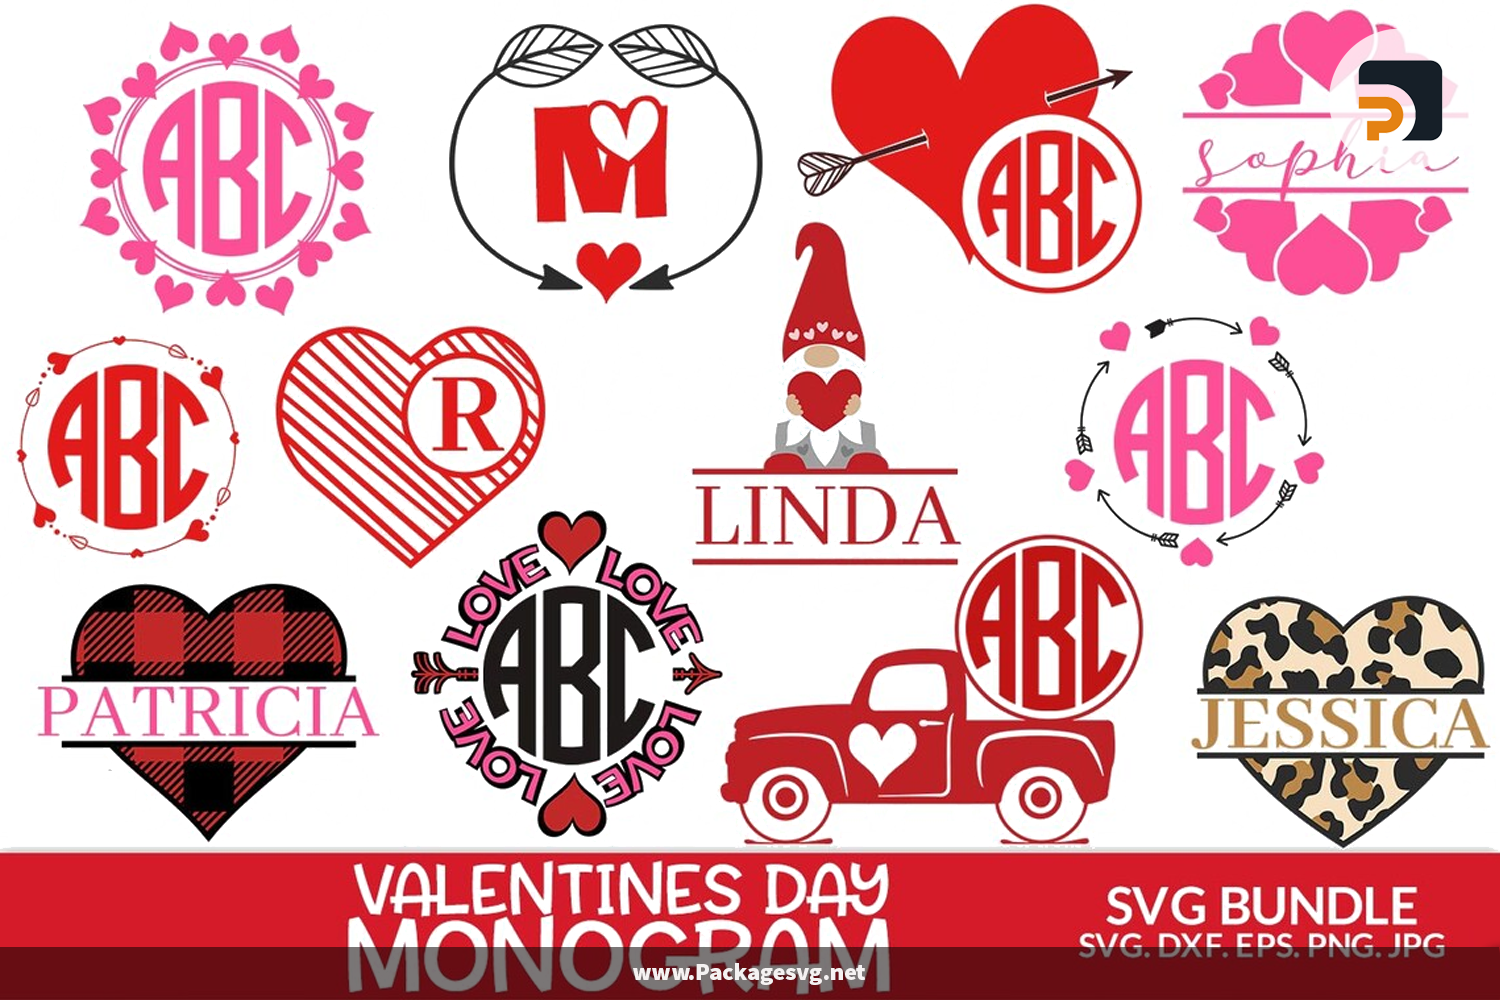 Valentines Day Monogram SVG Bundle